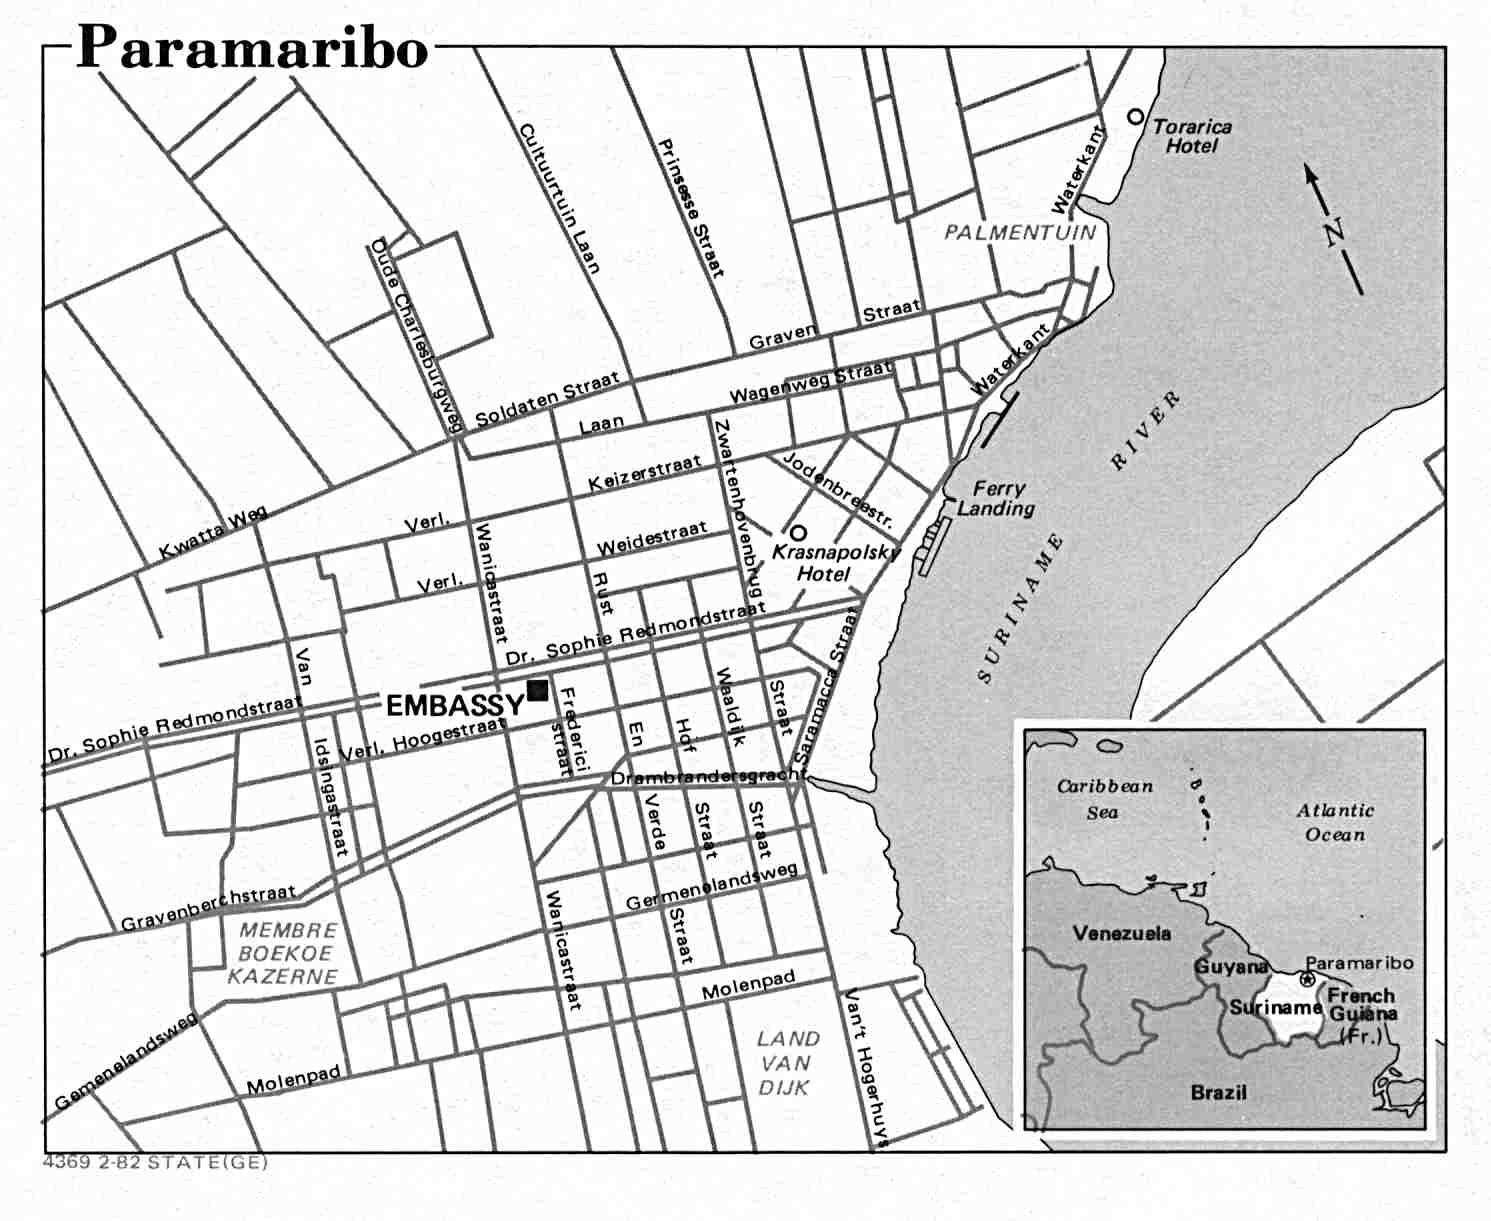 Map Of Suriname , Paramaribo U.S. Dept. of State 1982 (99K) 